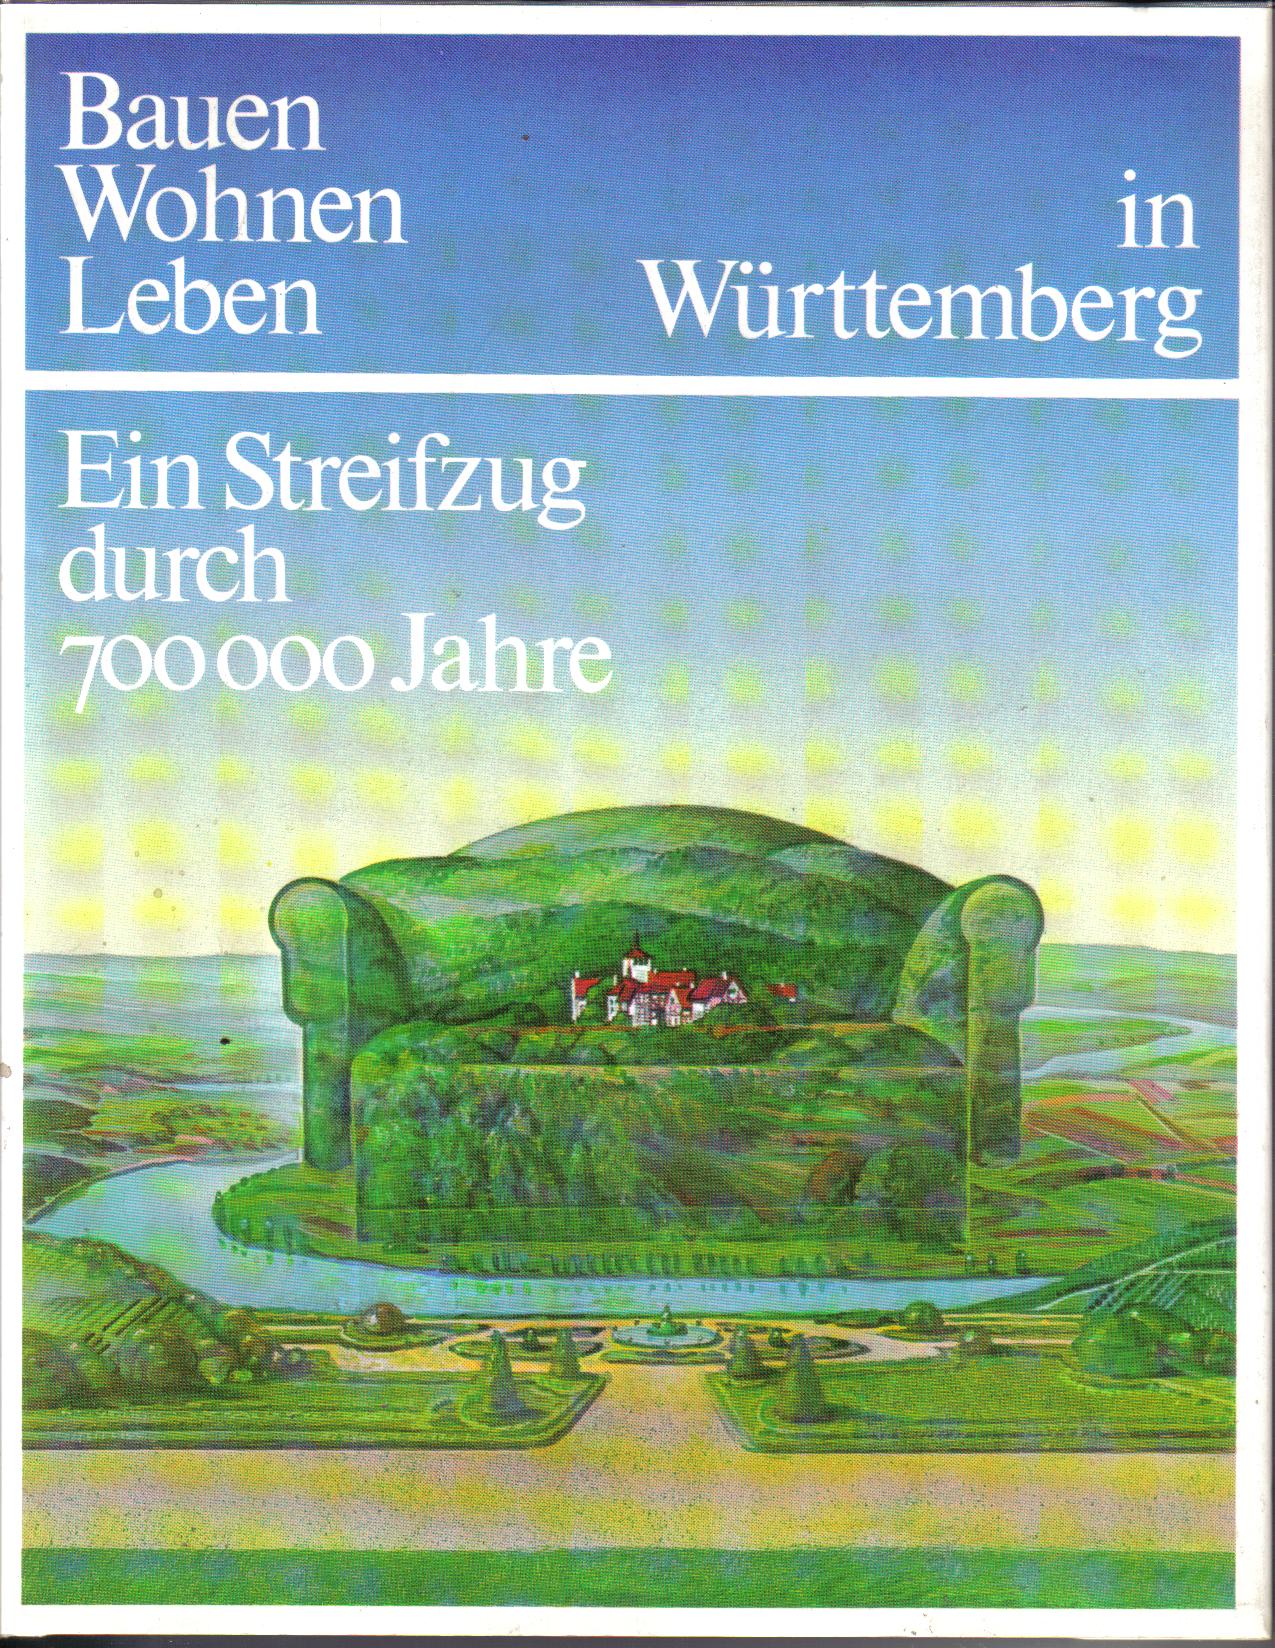 Bauen Wohnen Leben in  Wuerttemberg